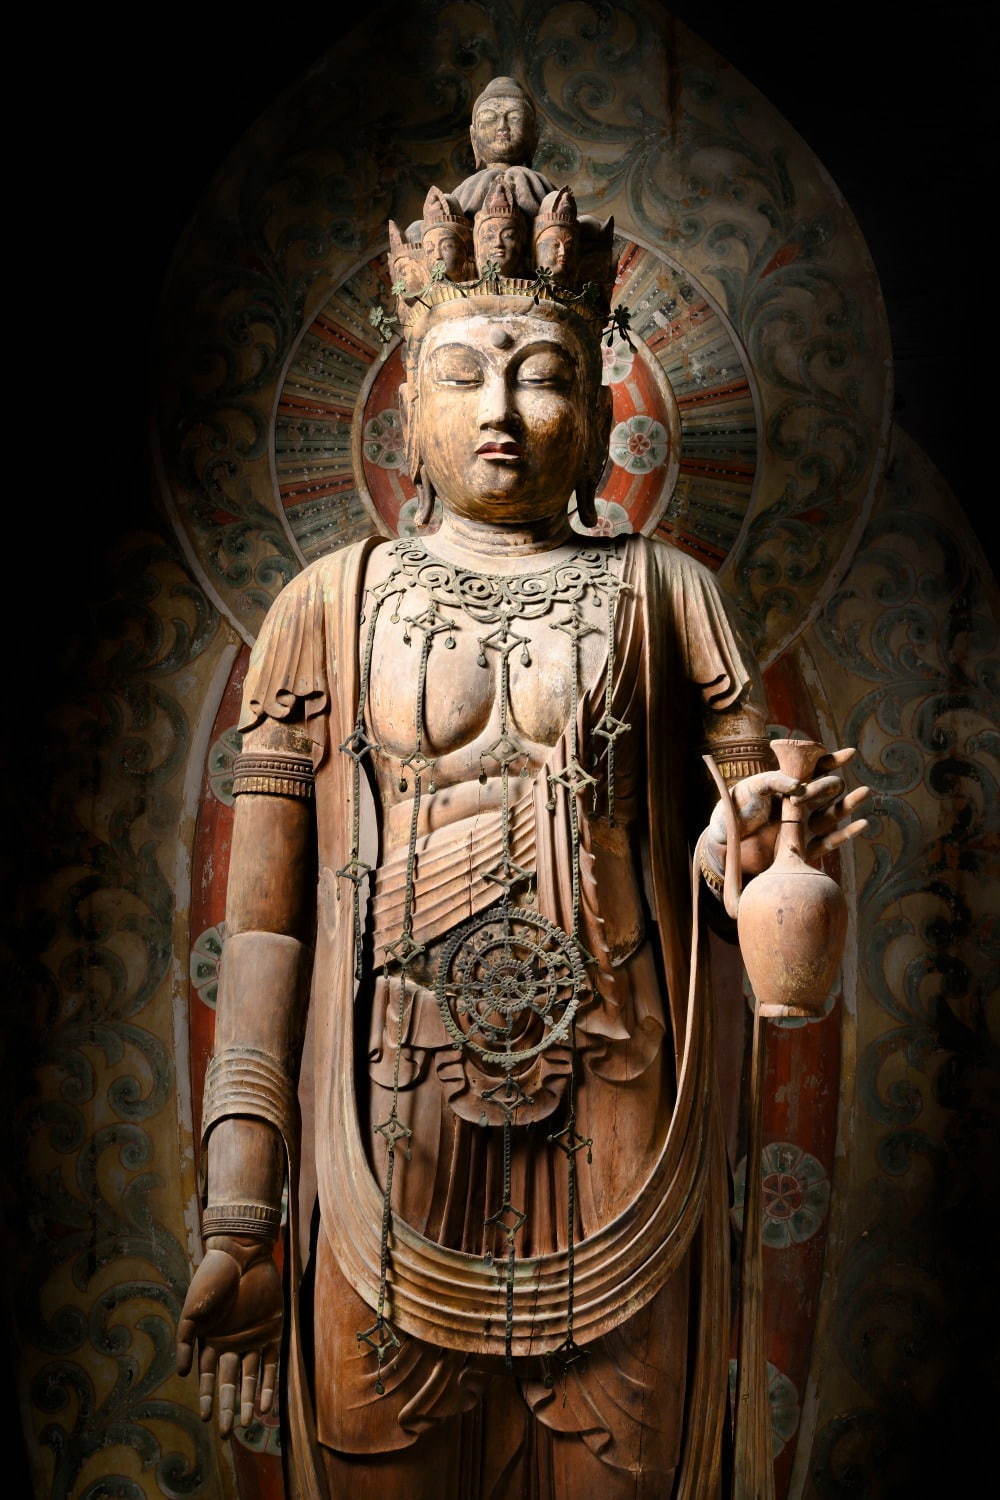 展覧会特別企画「奈良大和四寺のみほとけ」東京国立博物館で、日本の仏教文化を伝える4つの古寺の仏像